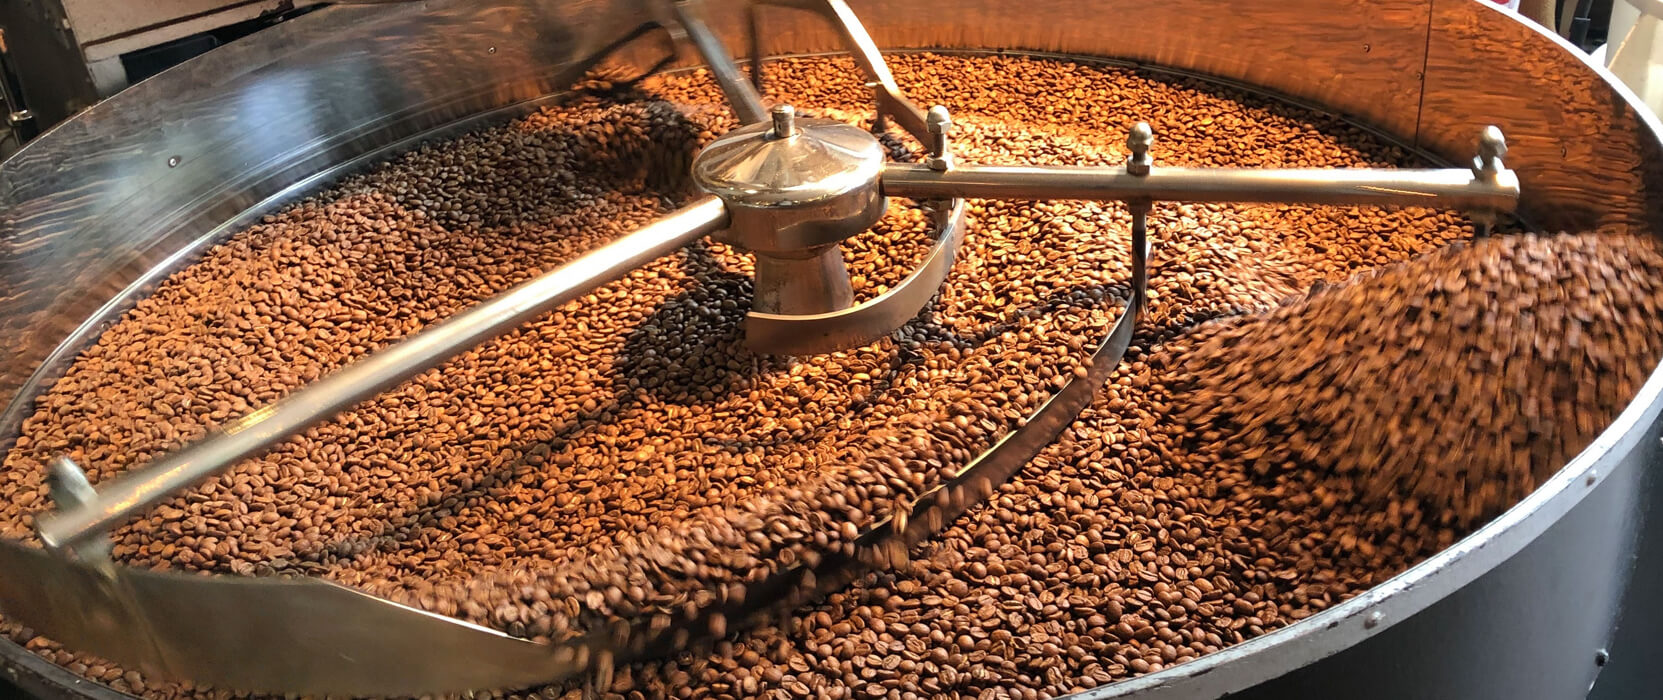 Kaffeegenuss: Vom Wachmacher zur Geheimwissenschaft | Schamong Kaffee